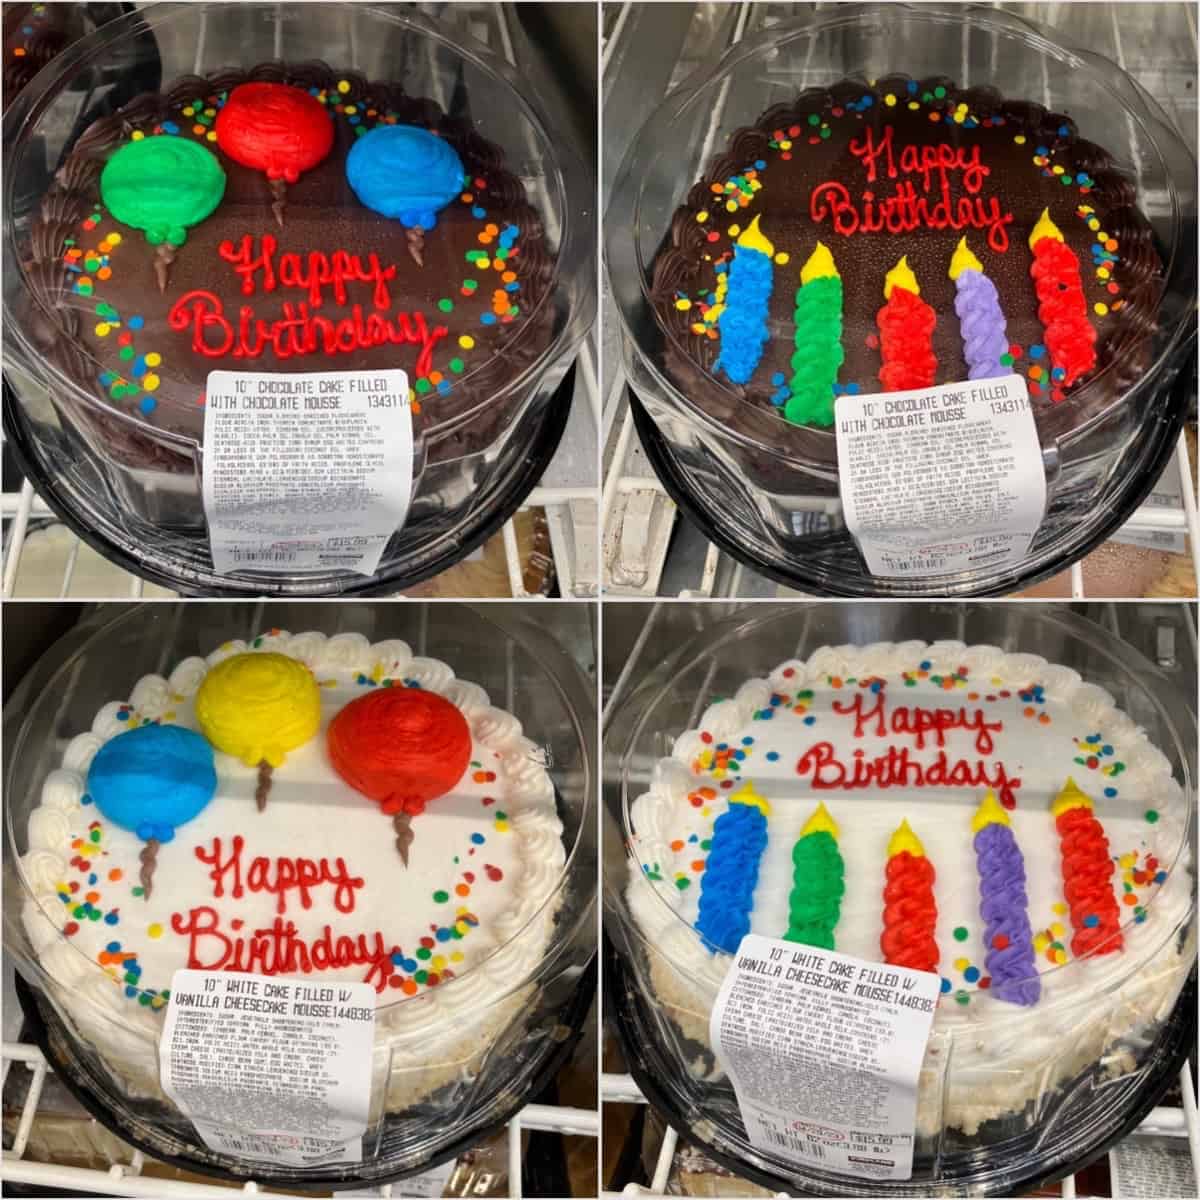 Costco birthday cakes